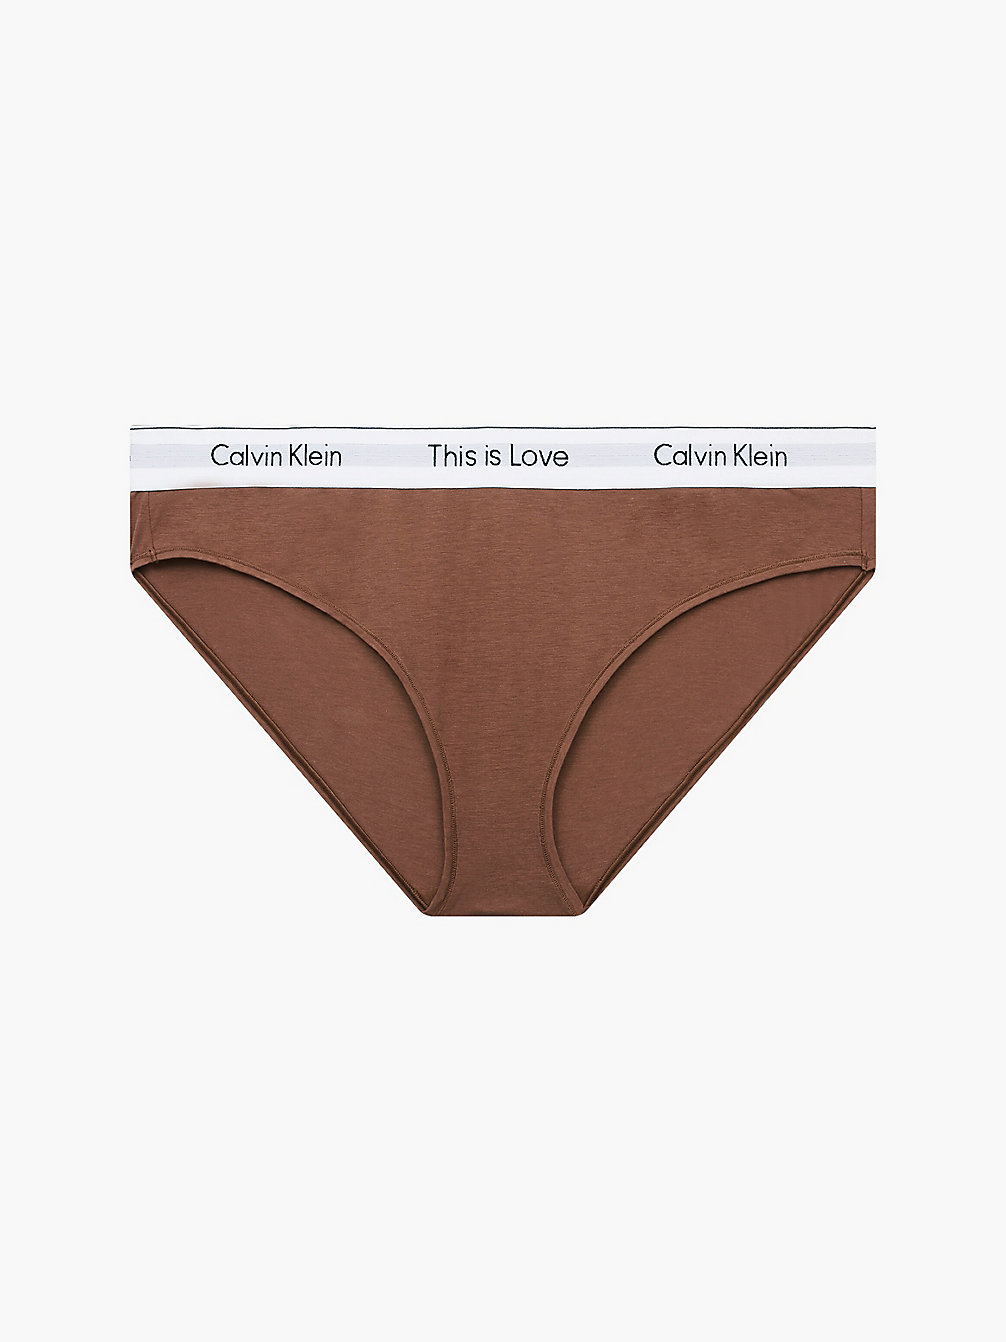 AZTEC Culotte Grande Taille - Pride undefined femmes Calvin Klein